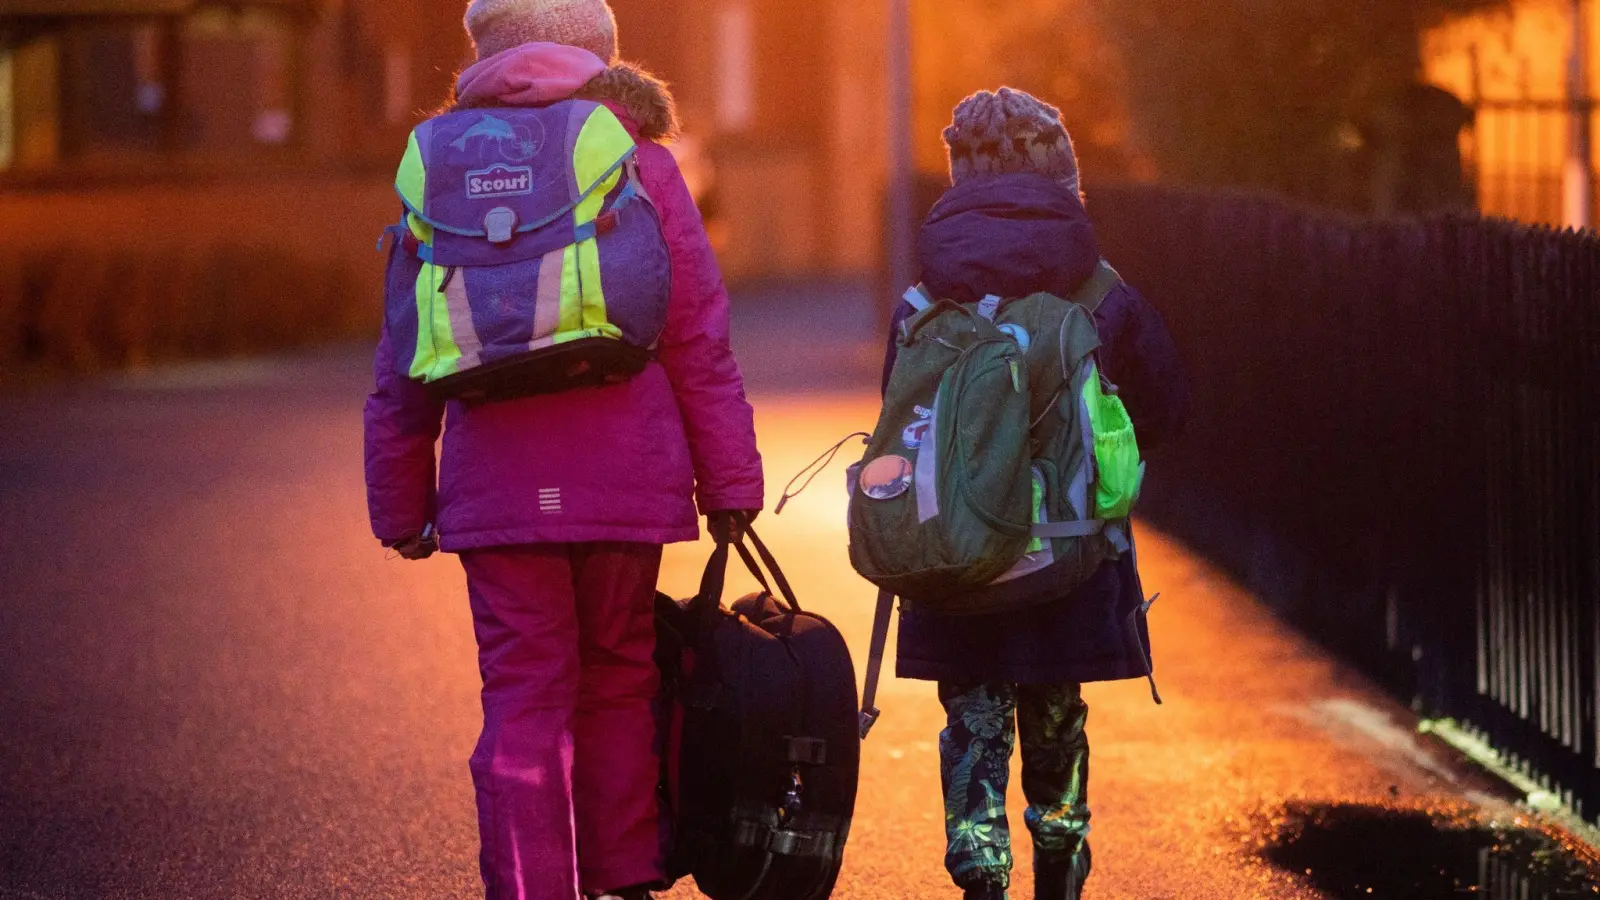 Je besser das Kind sichtbar, desto geringer das Risiko im Straßenverkehr. Am Rucksack sollten deswegen genügend Reflektoren angebracht sein. (Foto: Julian Stratenschulte/dpa/dpa-tmn)